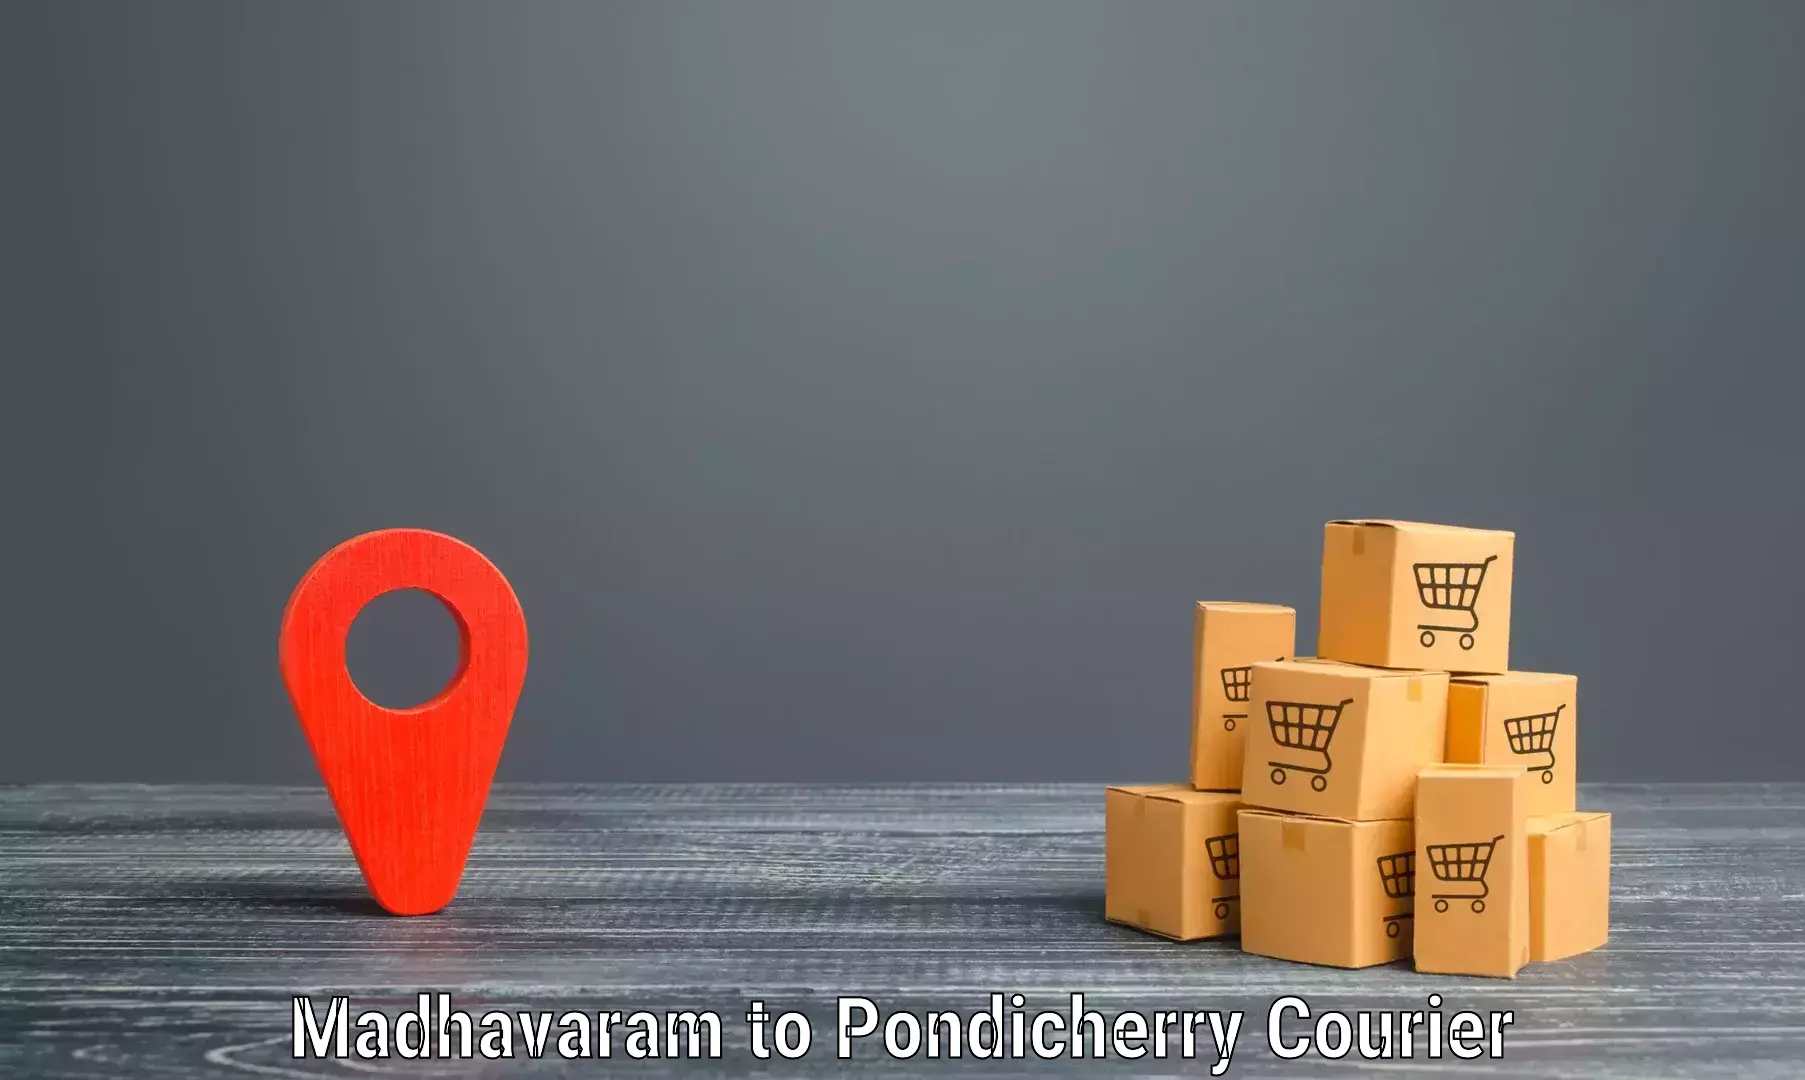 Cargo delivery service Madhavaram to Pondicherry University